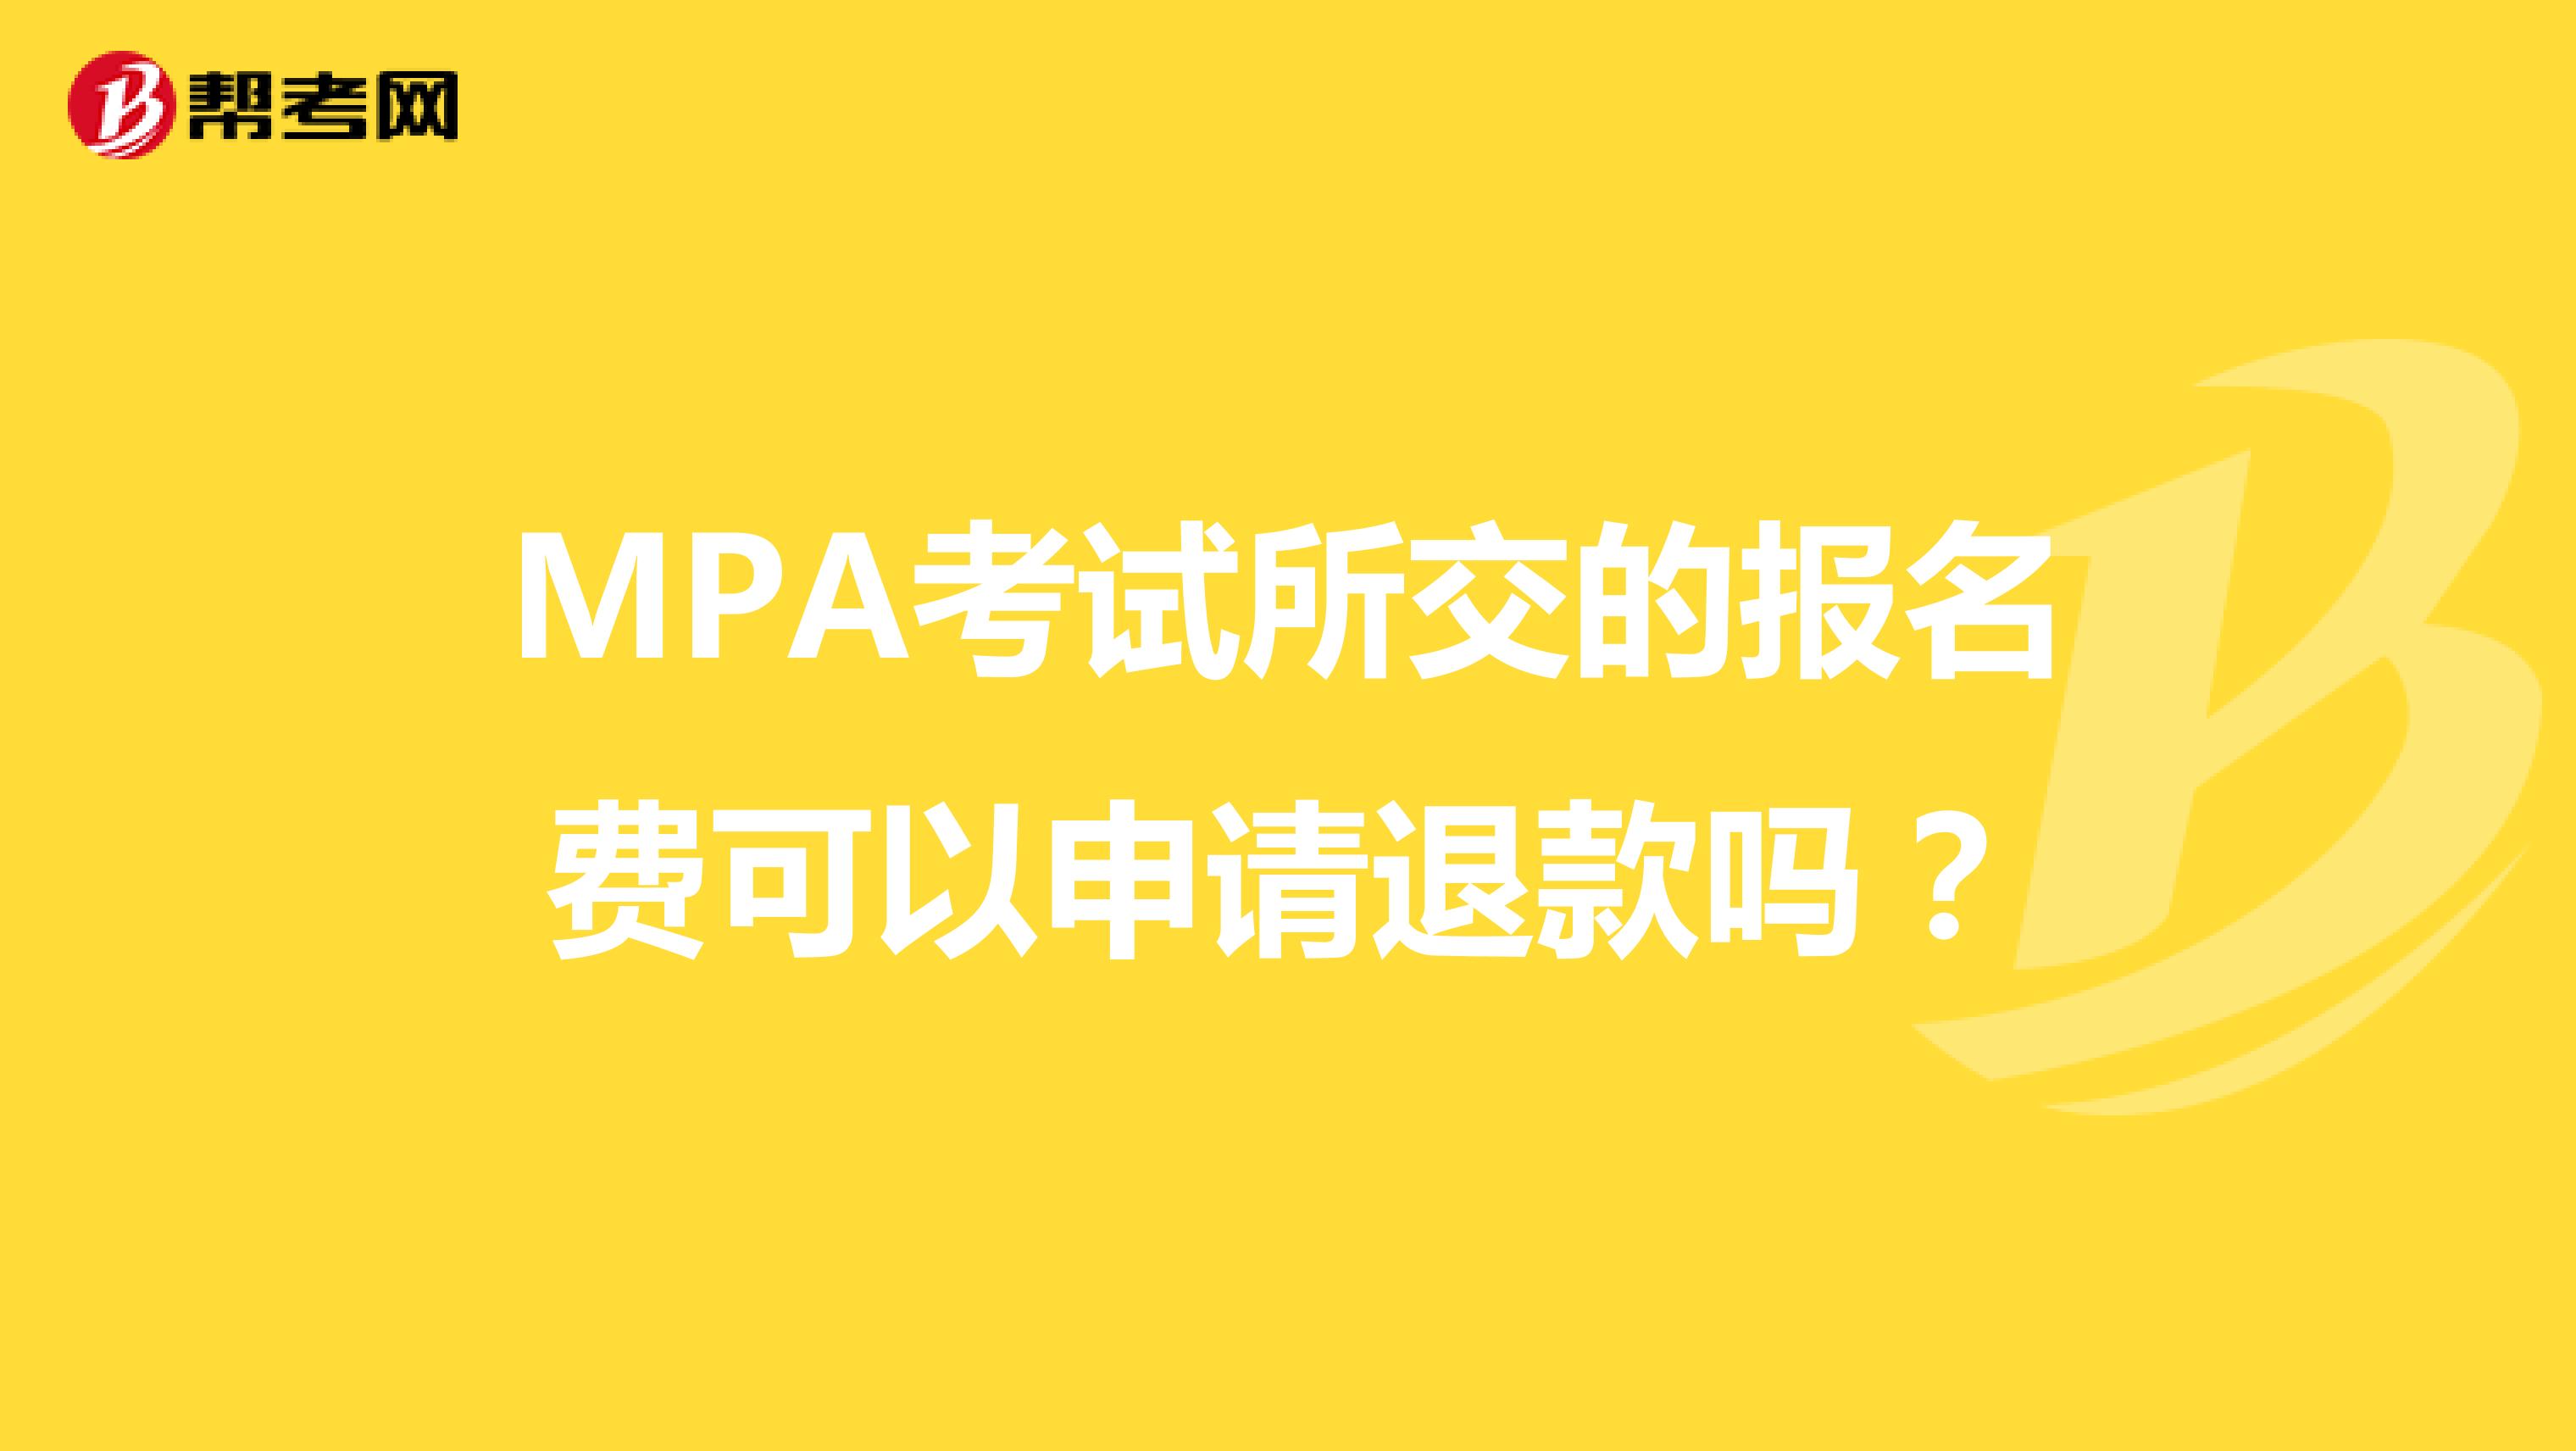 MPA考试所交的报名费可以申请退款吗？